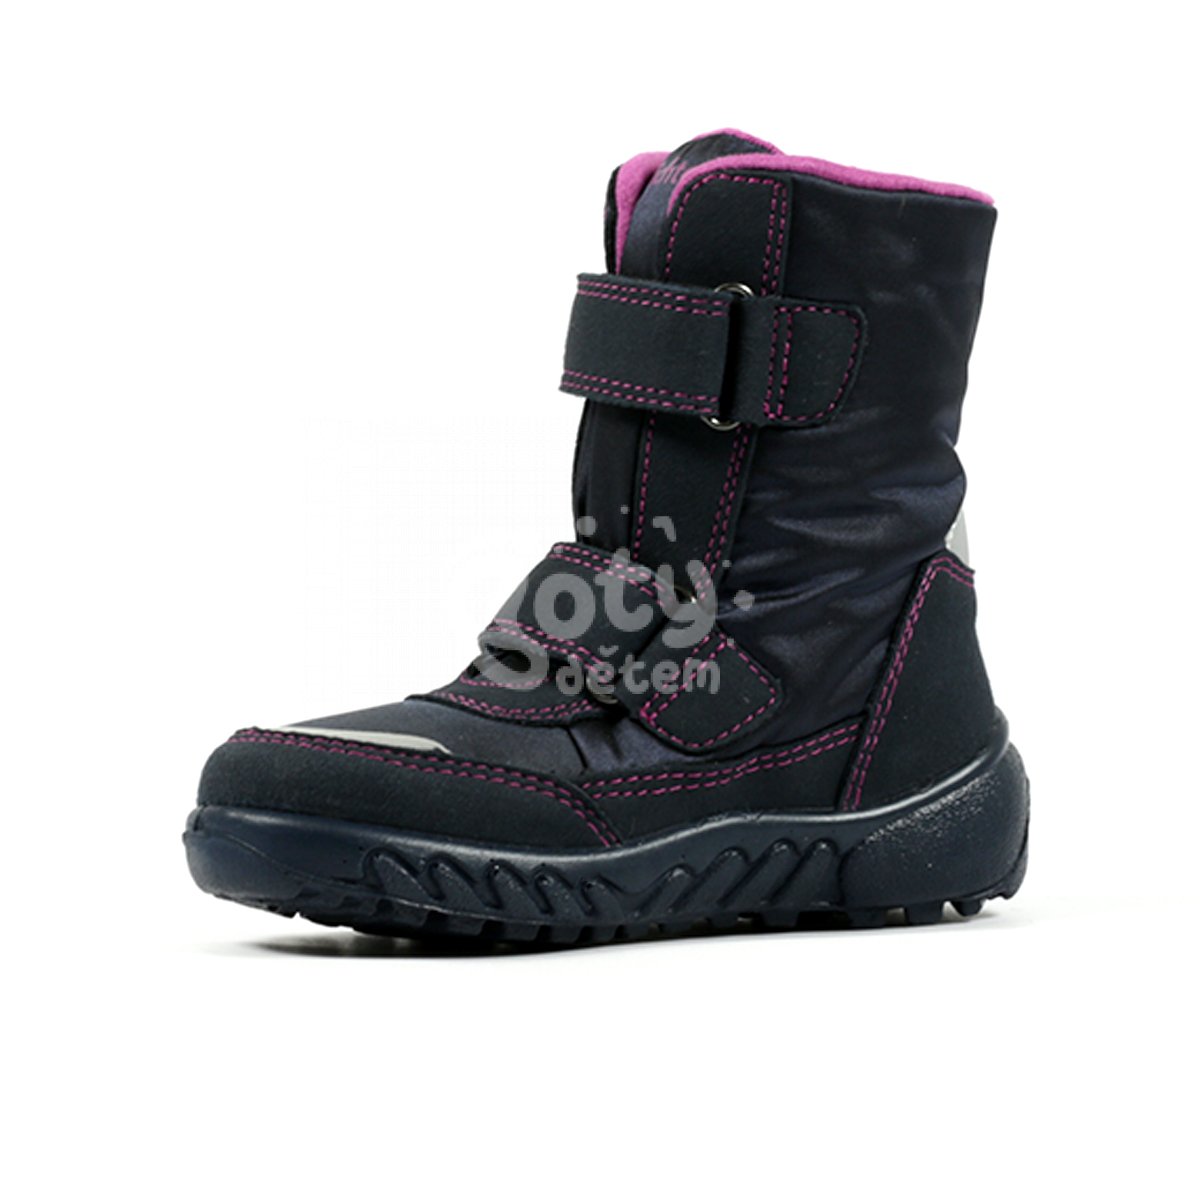 Zimní blikací obuv Husky Richter 5106-4171-7201 fialová